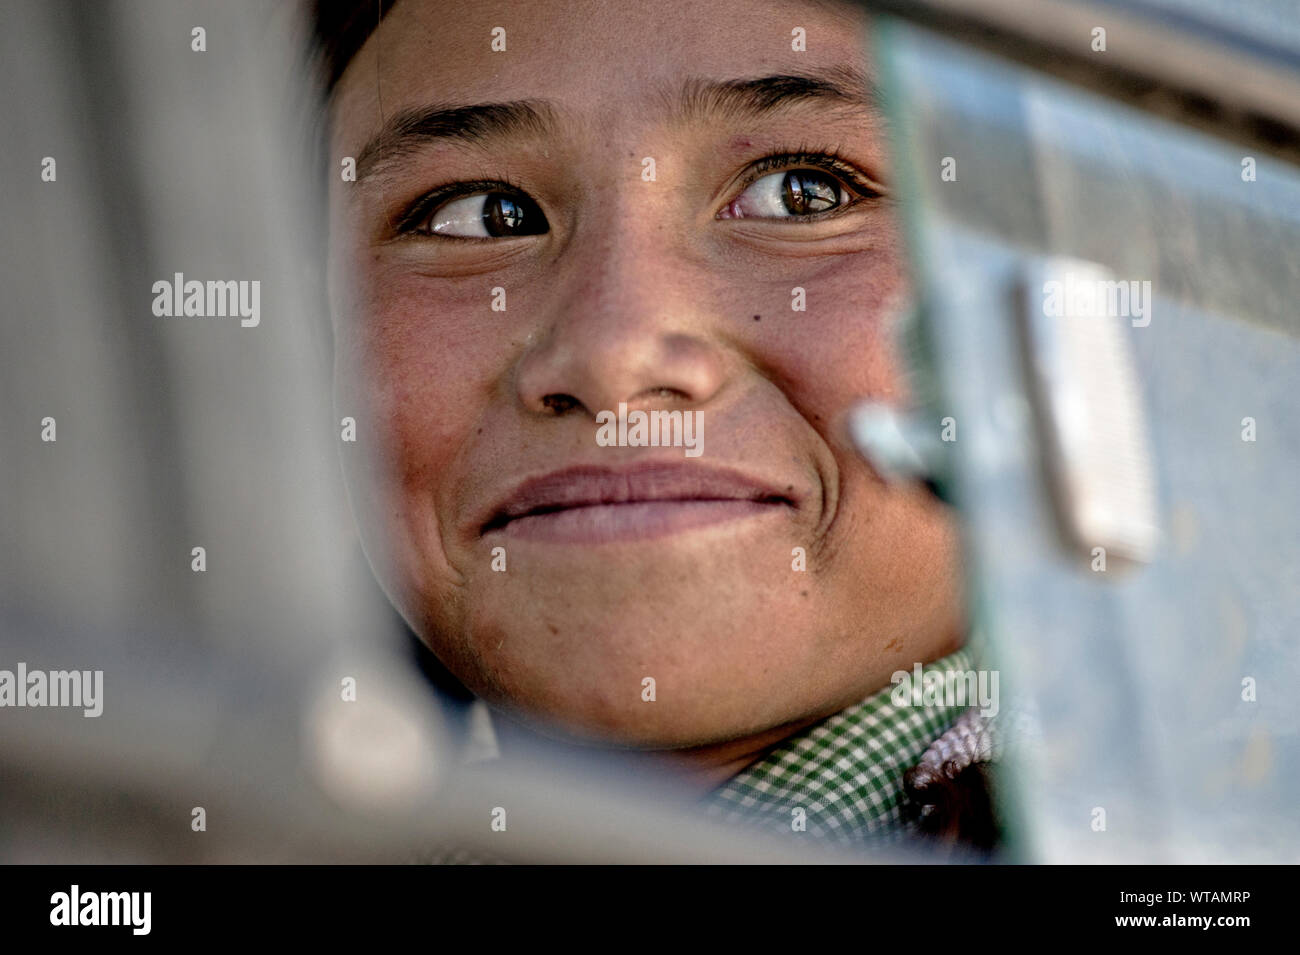 Schöne Ladhaki Mädchen in der Schule mit dem Bus, lächelnd Stockfoto